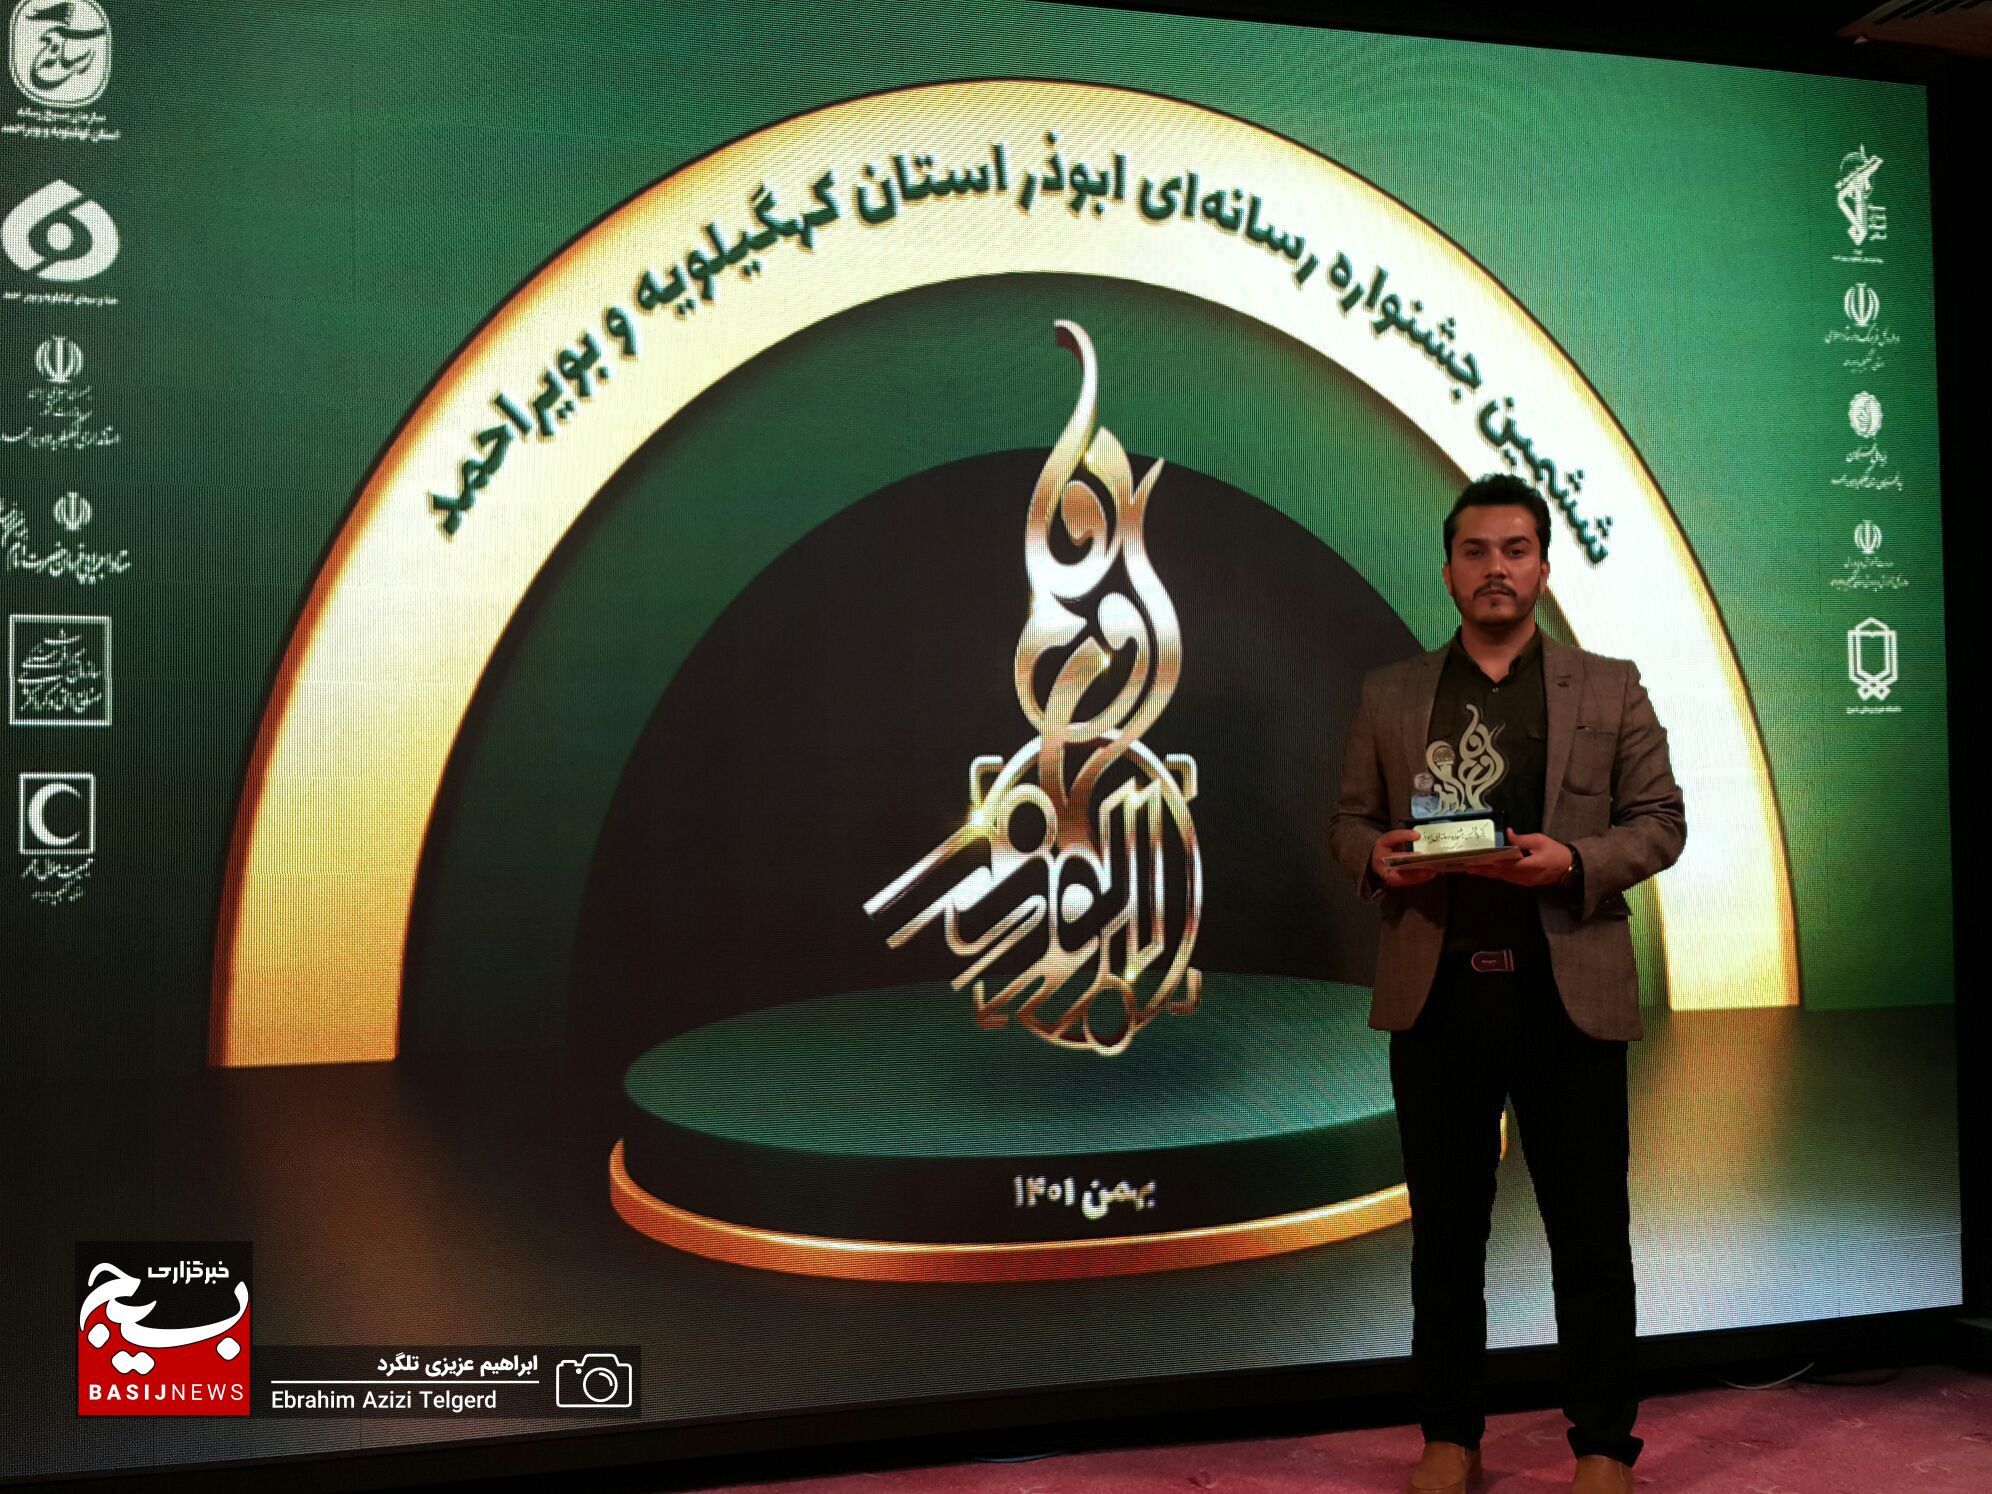 تصاویر جالب از آیین اختتامیه ششمین جشنواره رسانه ای ابوذر کهگیلویه و بویراحمد